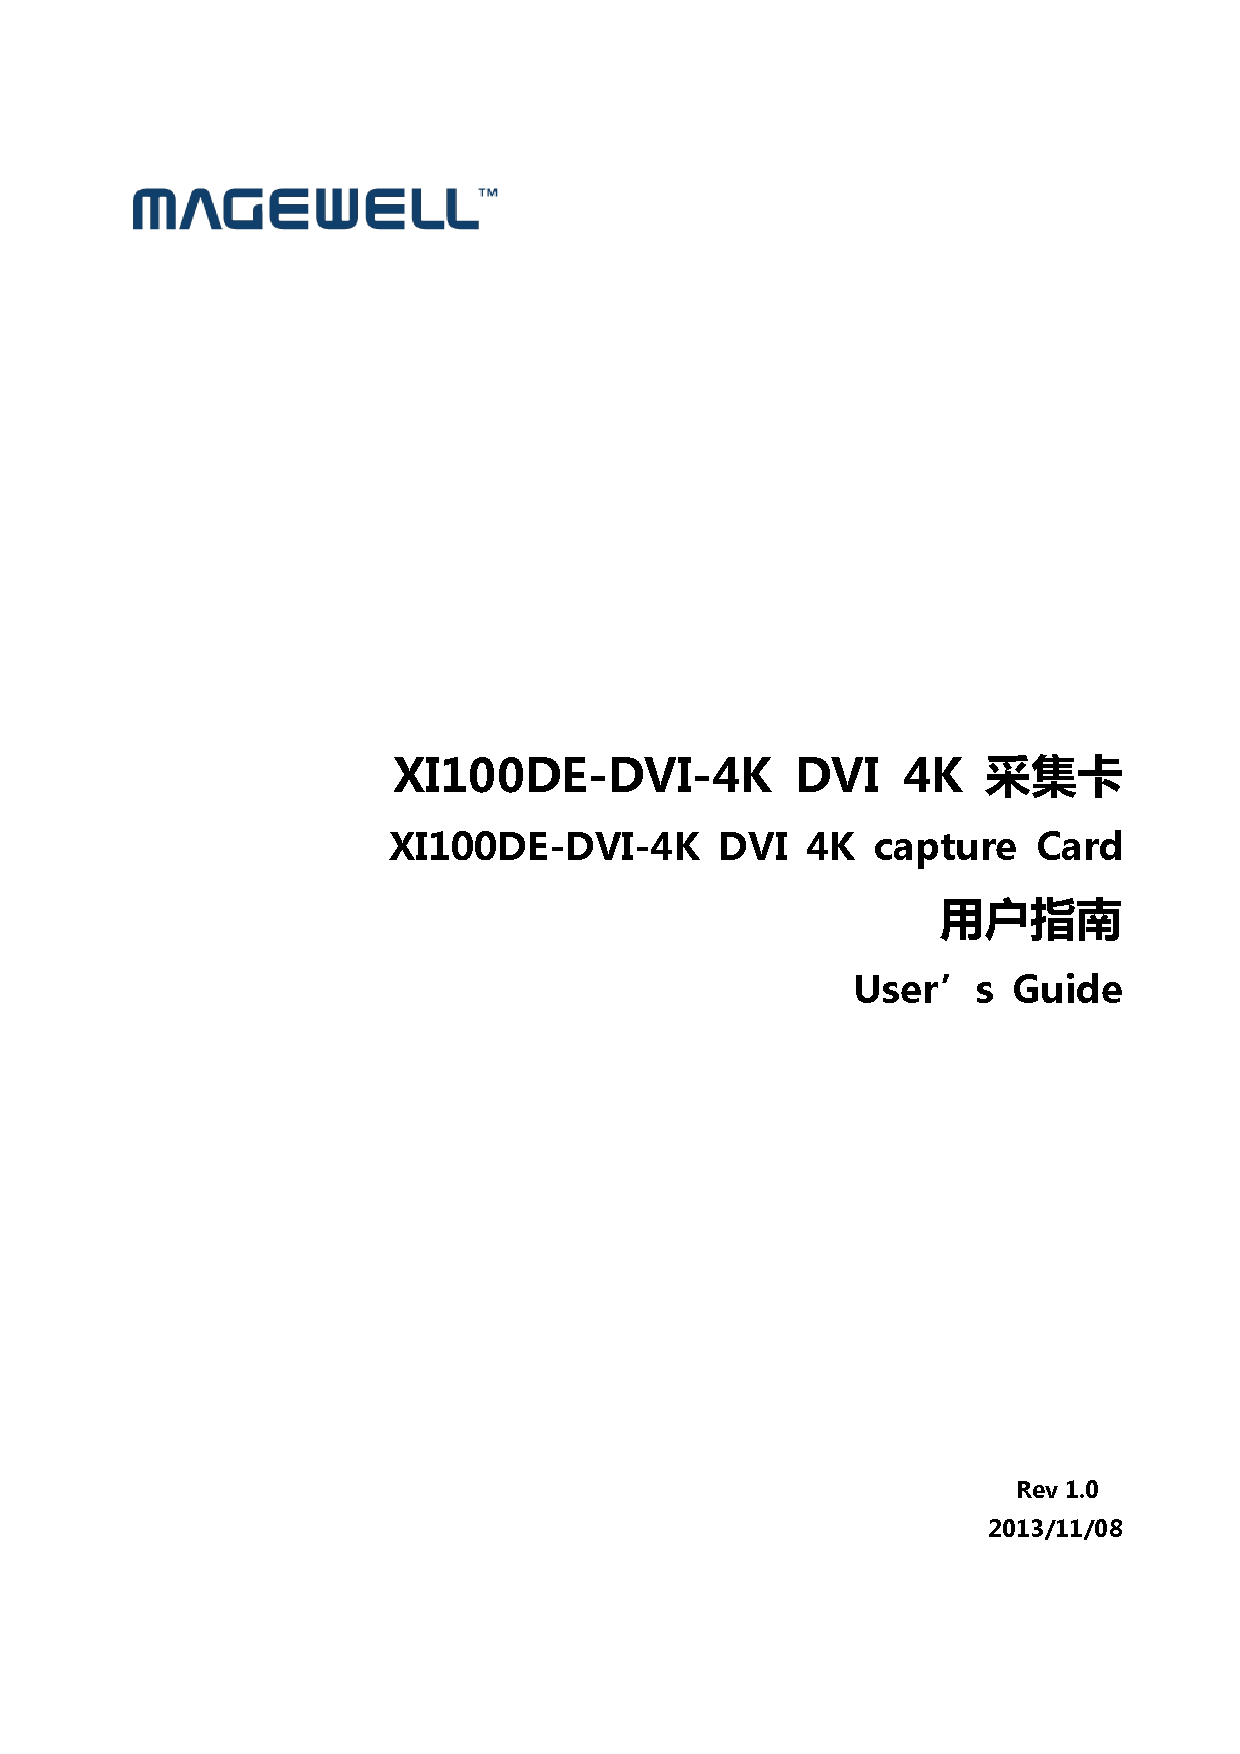 美乐威 Magewell XI100DE-DVI-4K 用户指南 封面